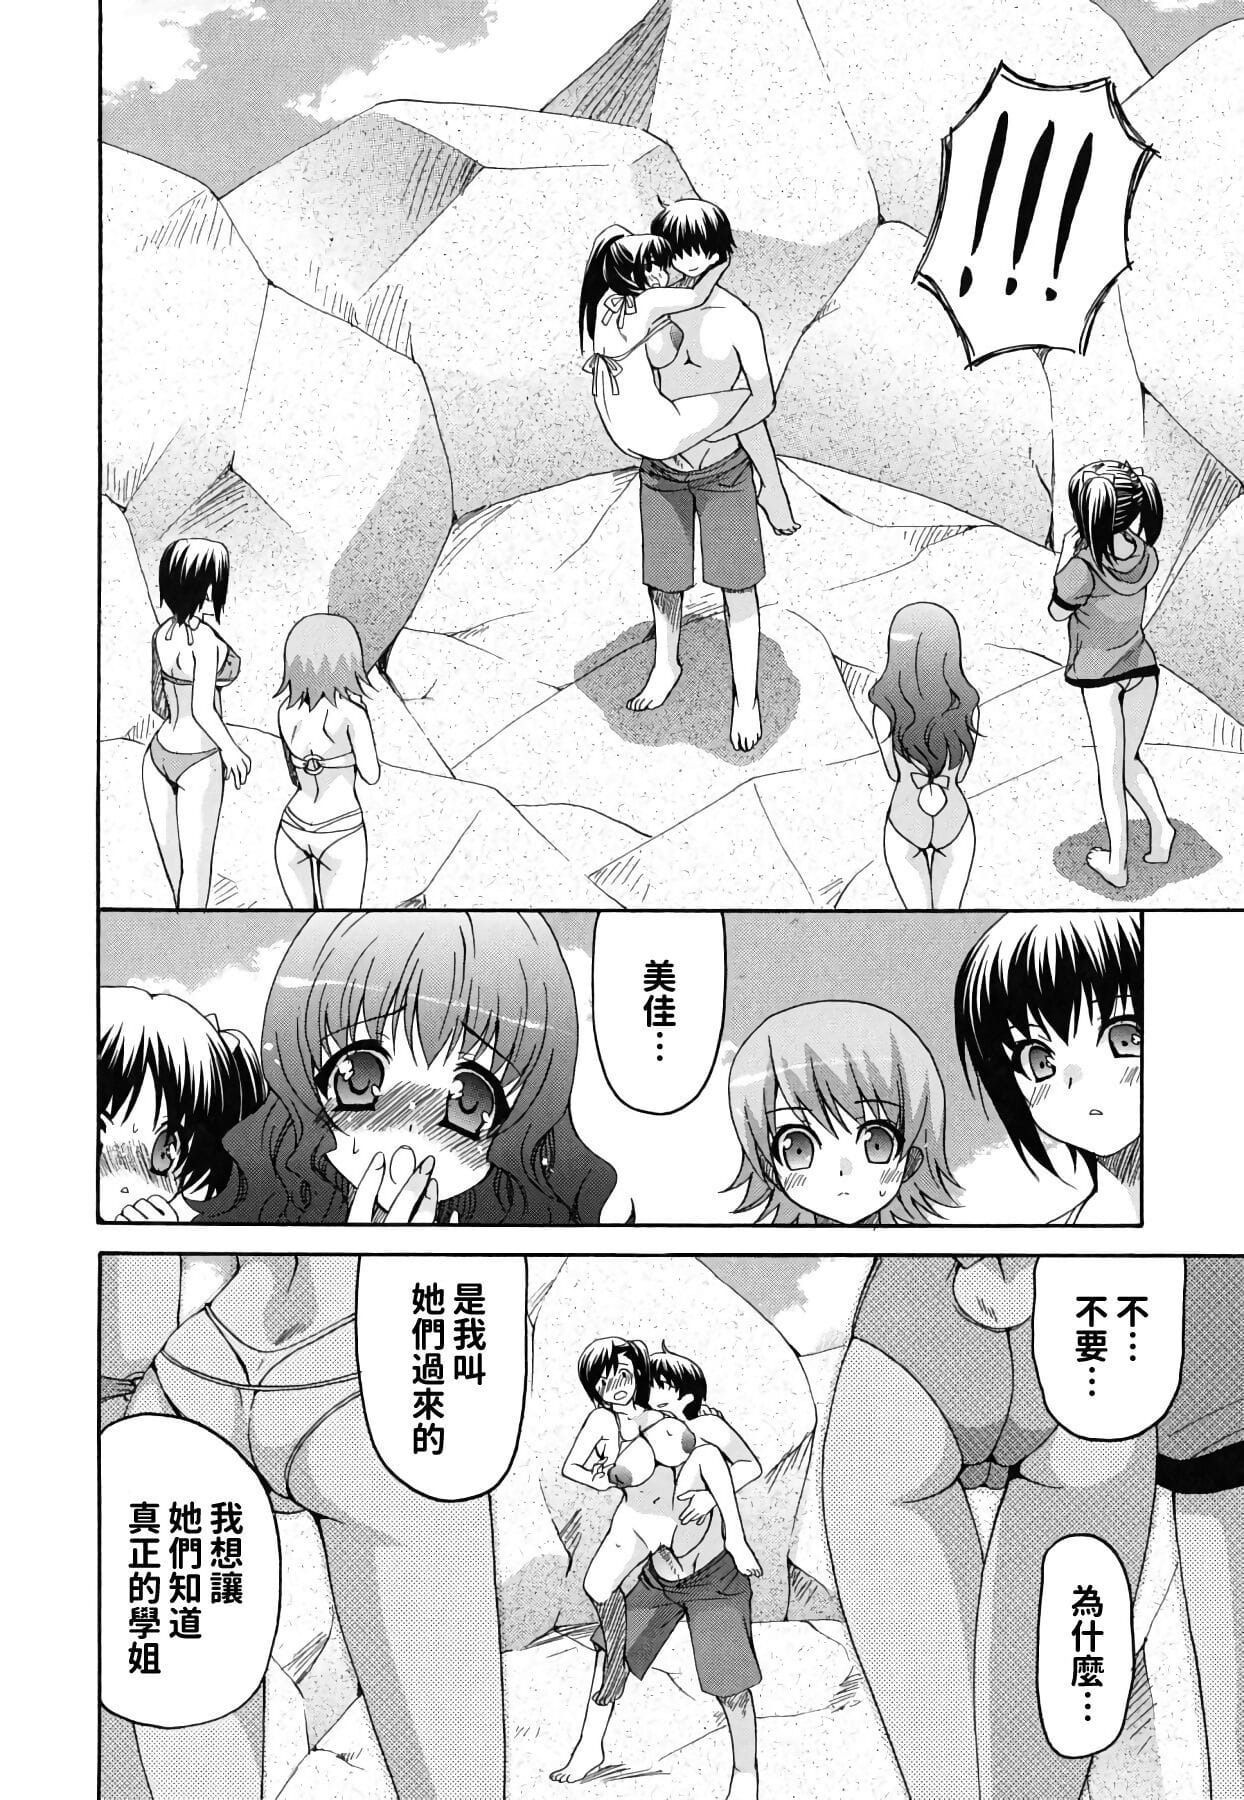 Kanojo no Chichi wa Boku no Mono - part 2 page 1